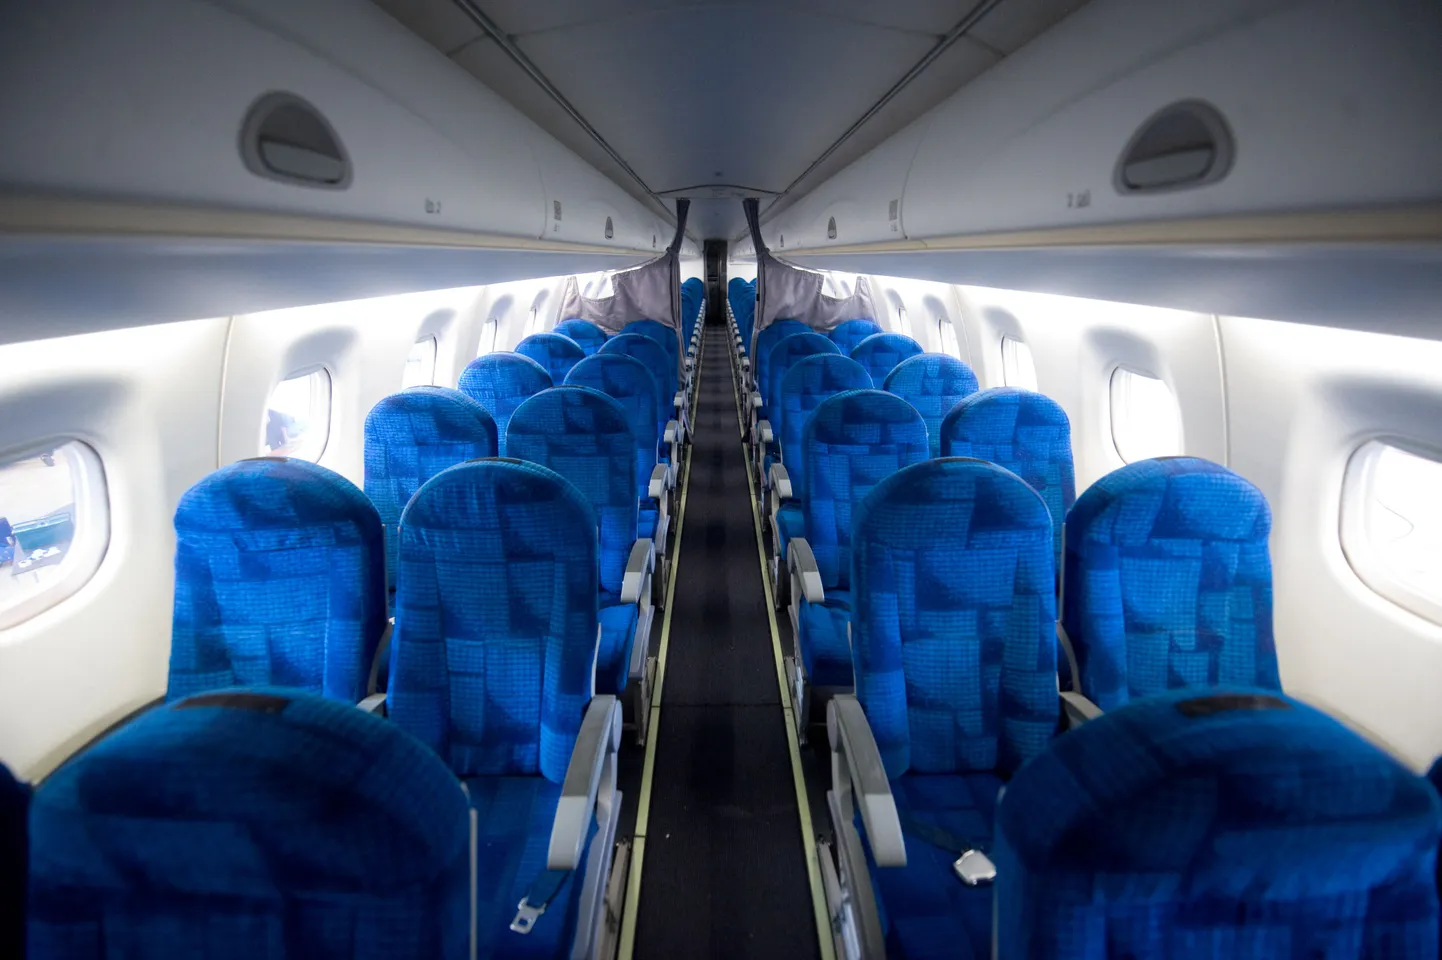 На первый взгляд кресла Embraer 170 кажутся удобными